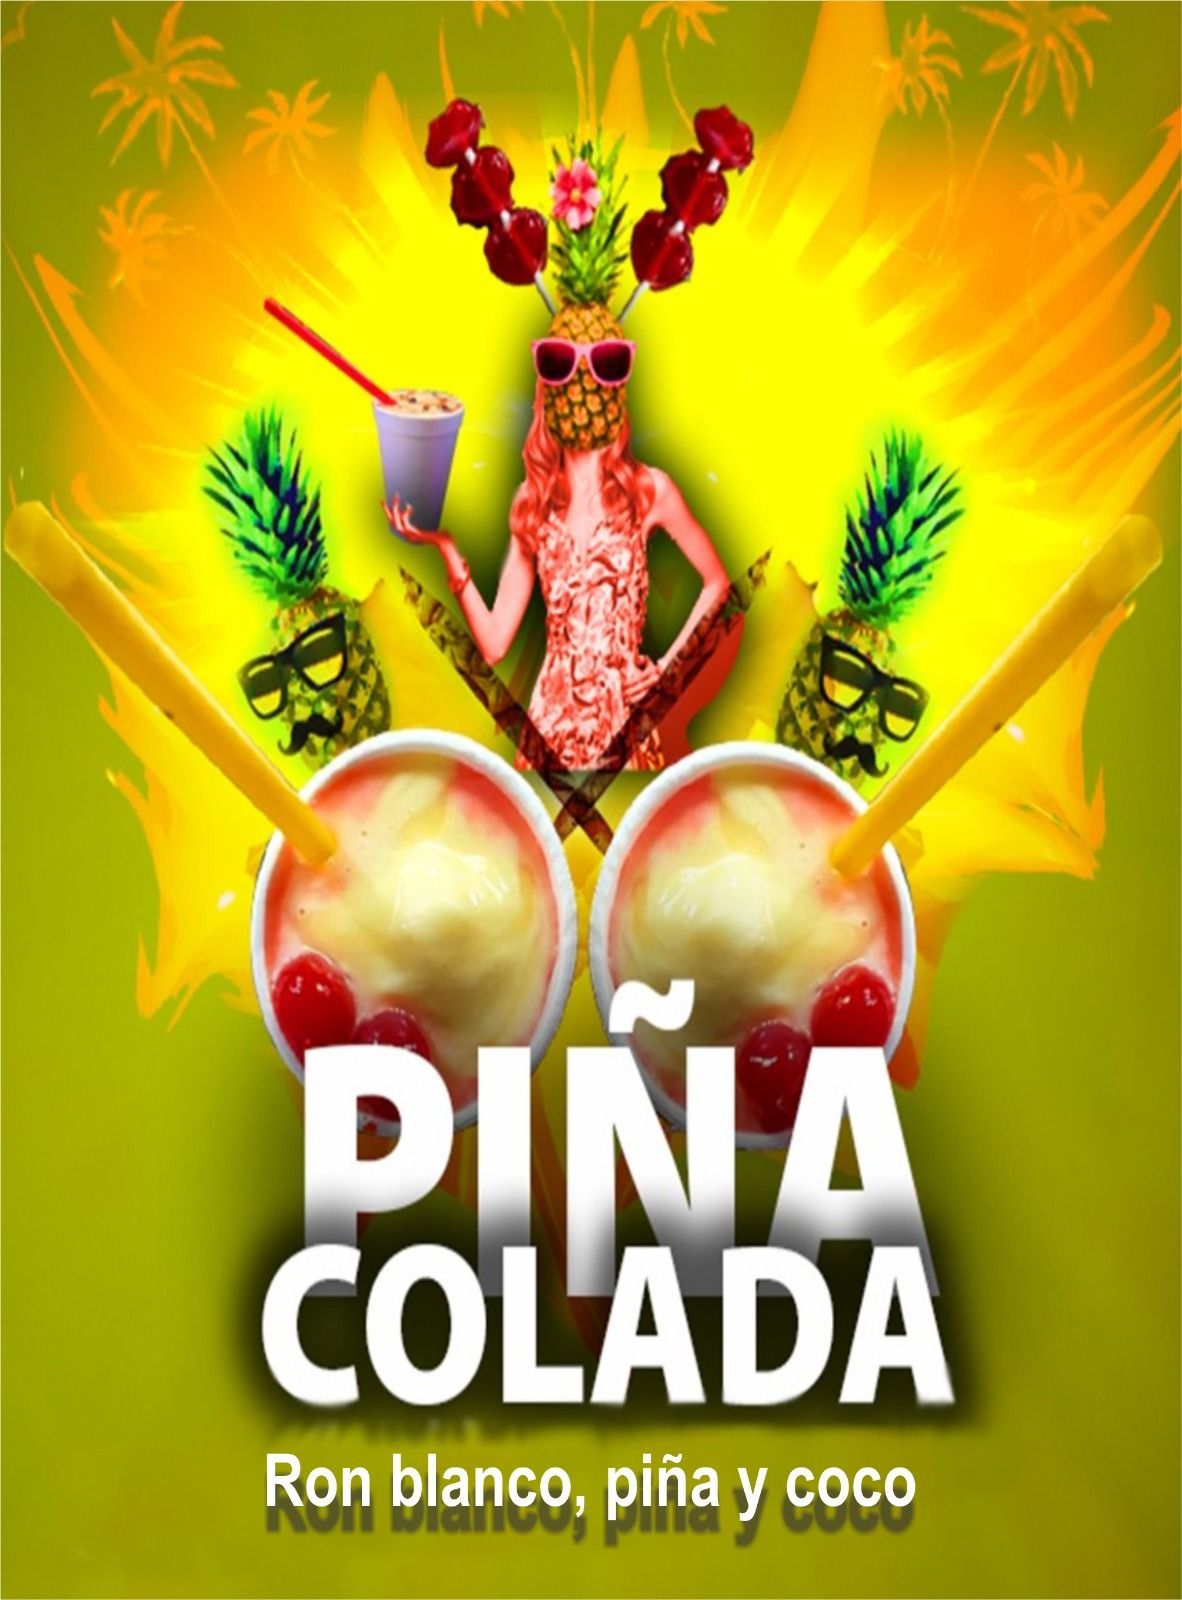 Un cartel de piña colada, que es una bebida de ron blanco de piña y coco